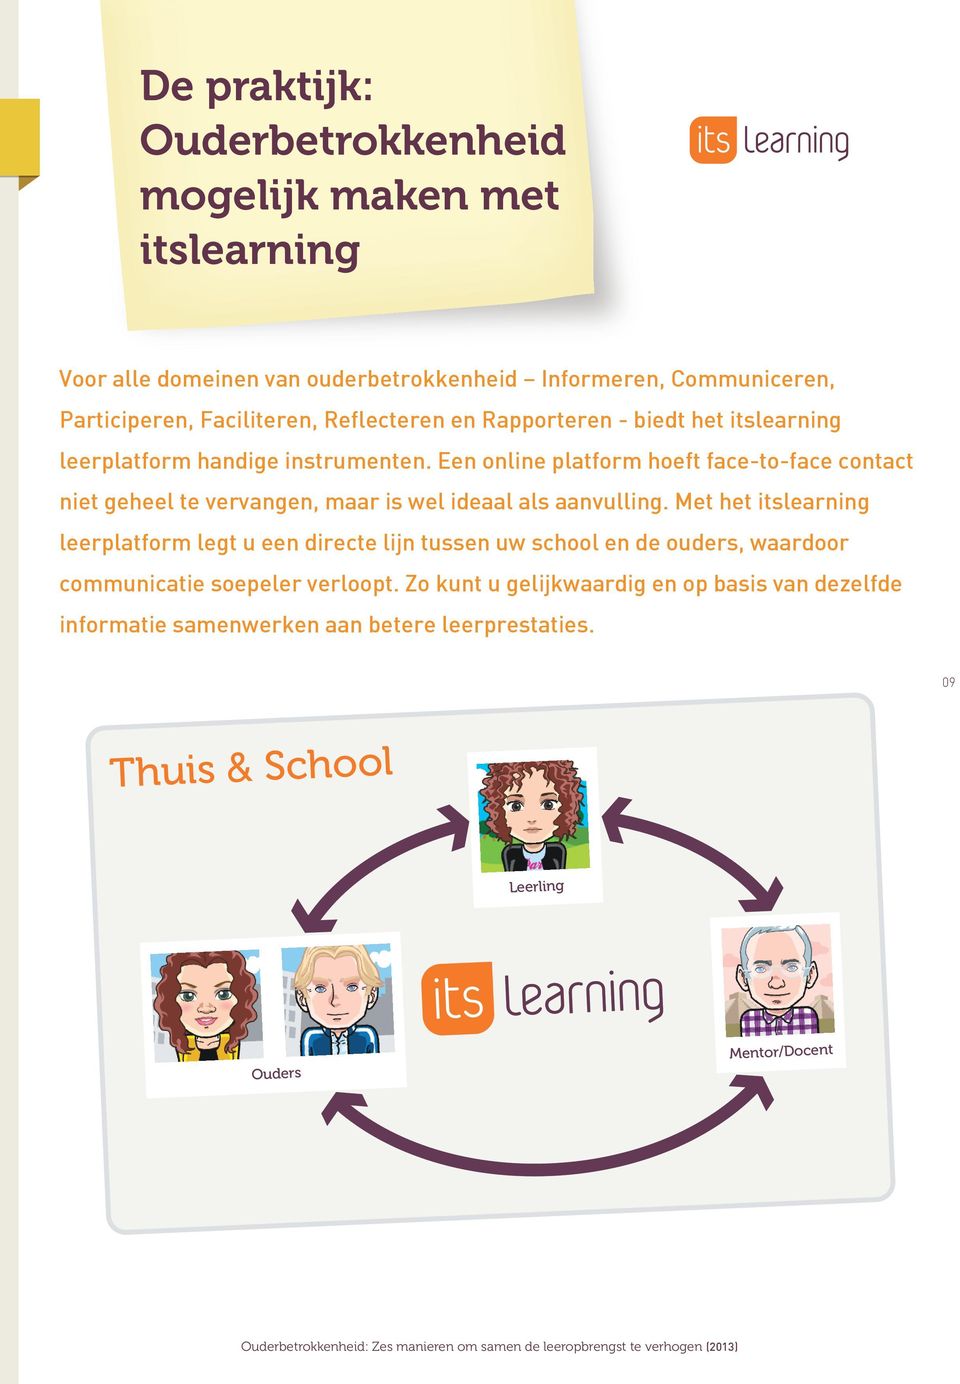 Met het itslearning leerplatform legt u een directe lijn tussen uw school en de ouders, waardoor communicatie soepeler verloopt.